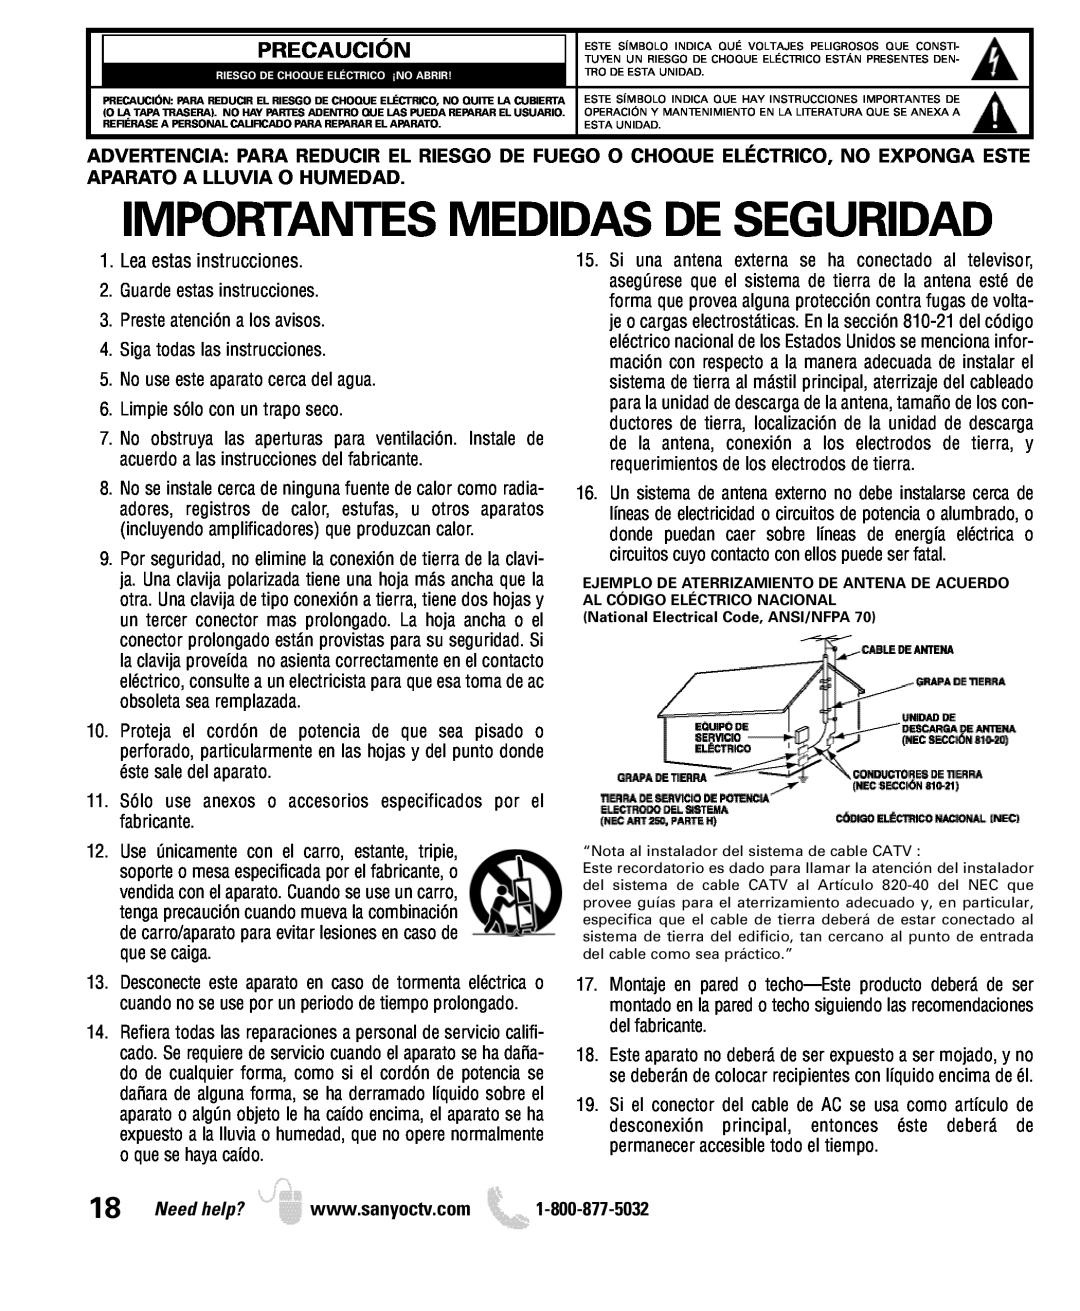 Sanyo DP26649, DP19649 owner manual Precaución, Importantes Medidas De Seguridad, Lea estas instrucciones 